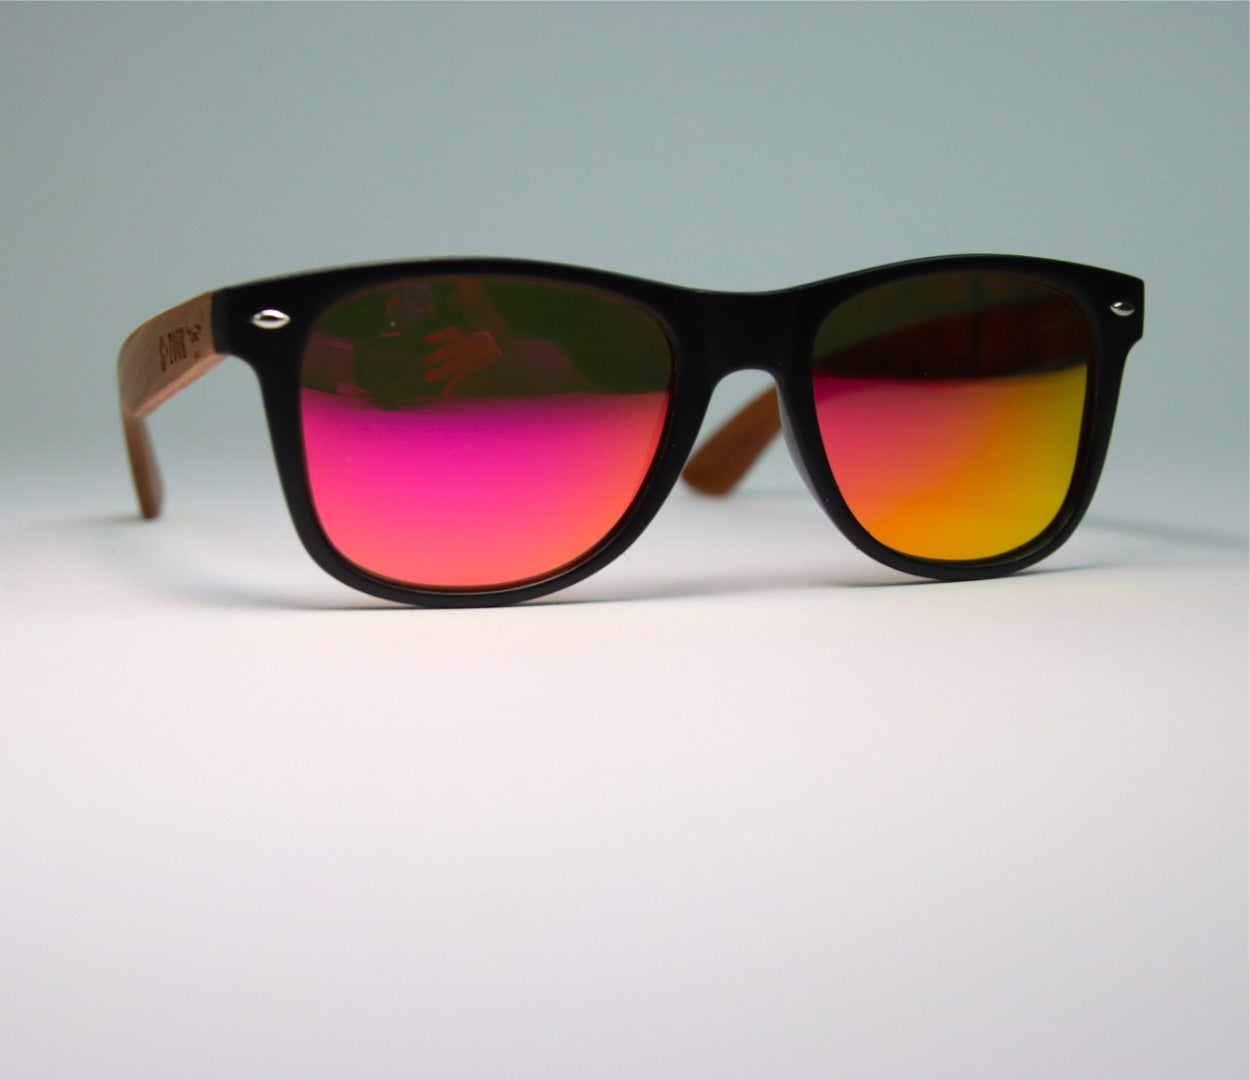 Sunglasses - “Hero” Pink